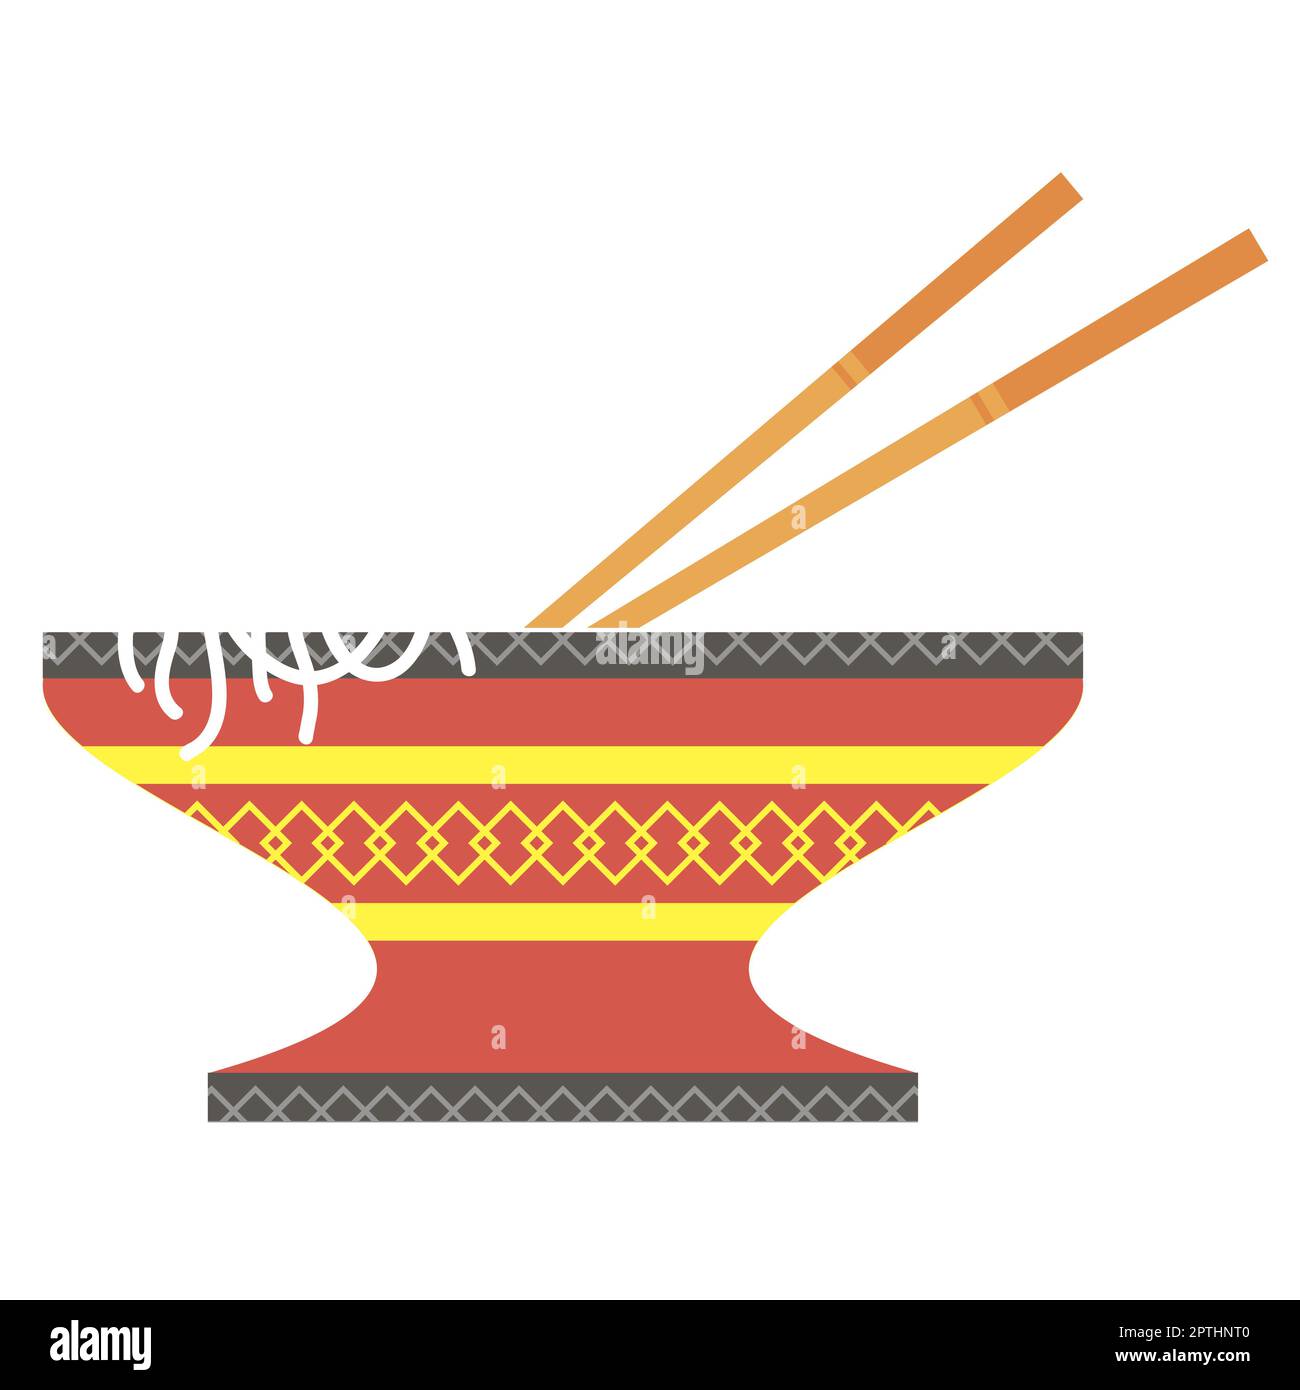 Chinese food logo Isolated on White Background Stock Photo - Alamy